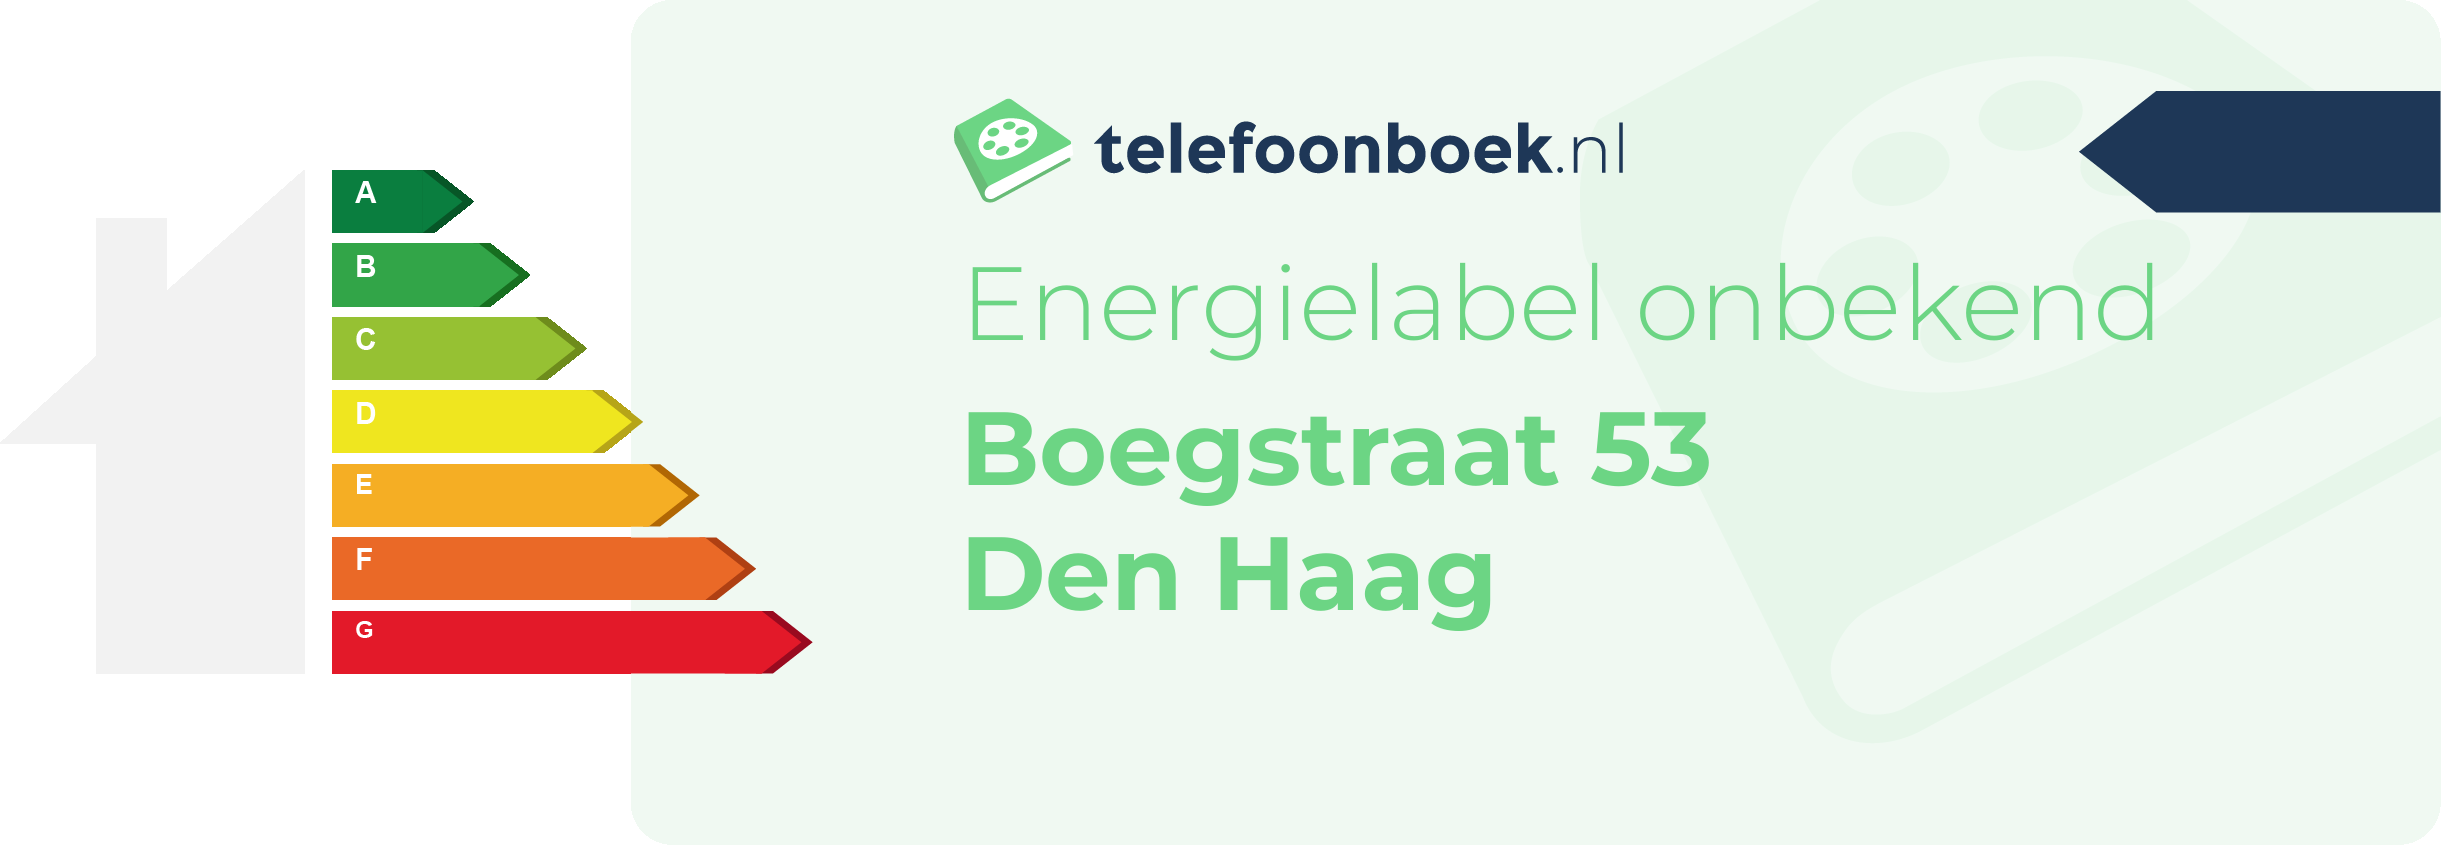 Energielabel Boegstraat 53 Den Haag